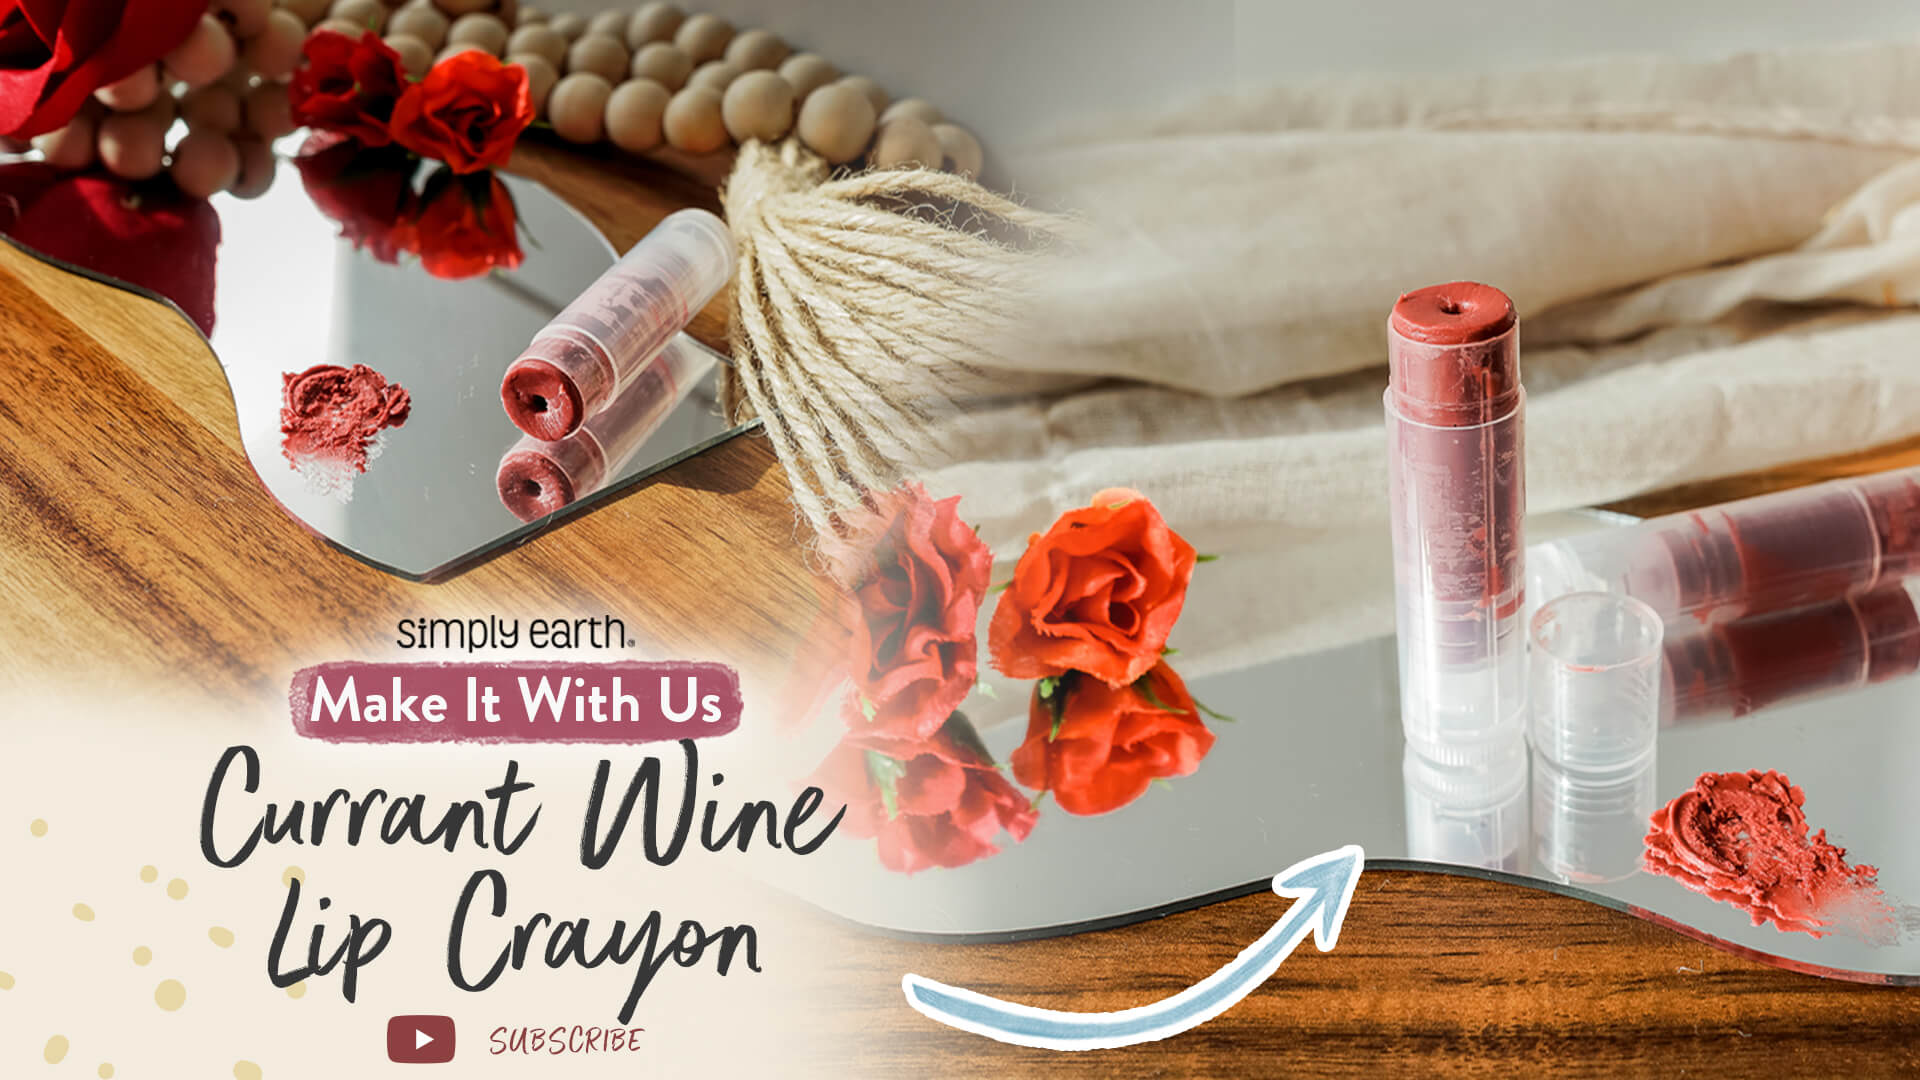 Currant Wine Lip Crayon